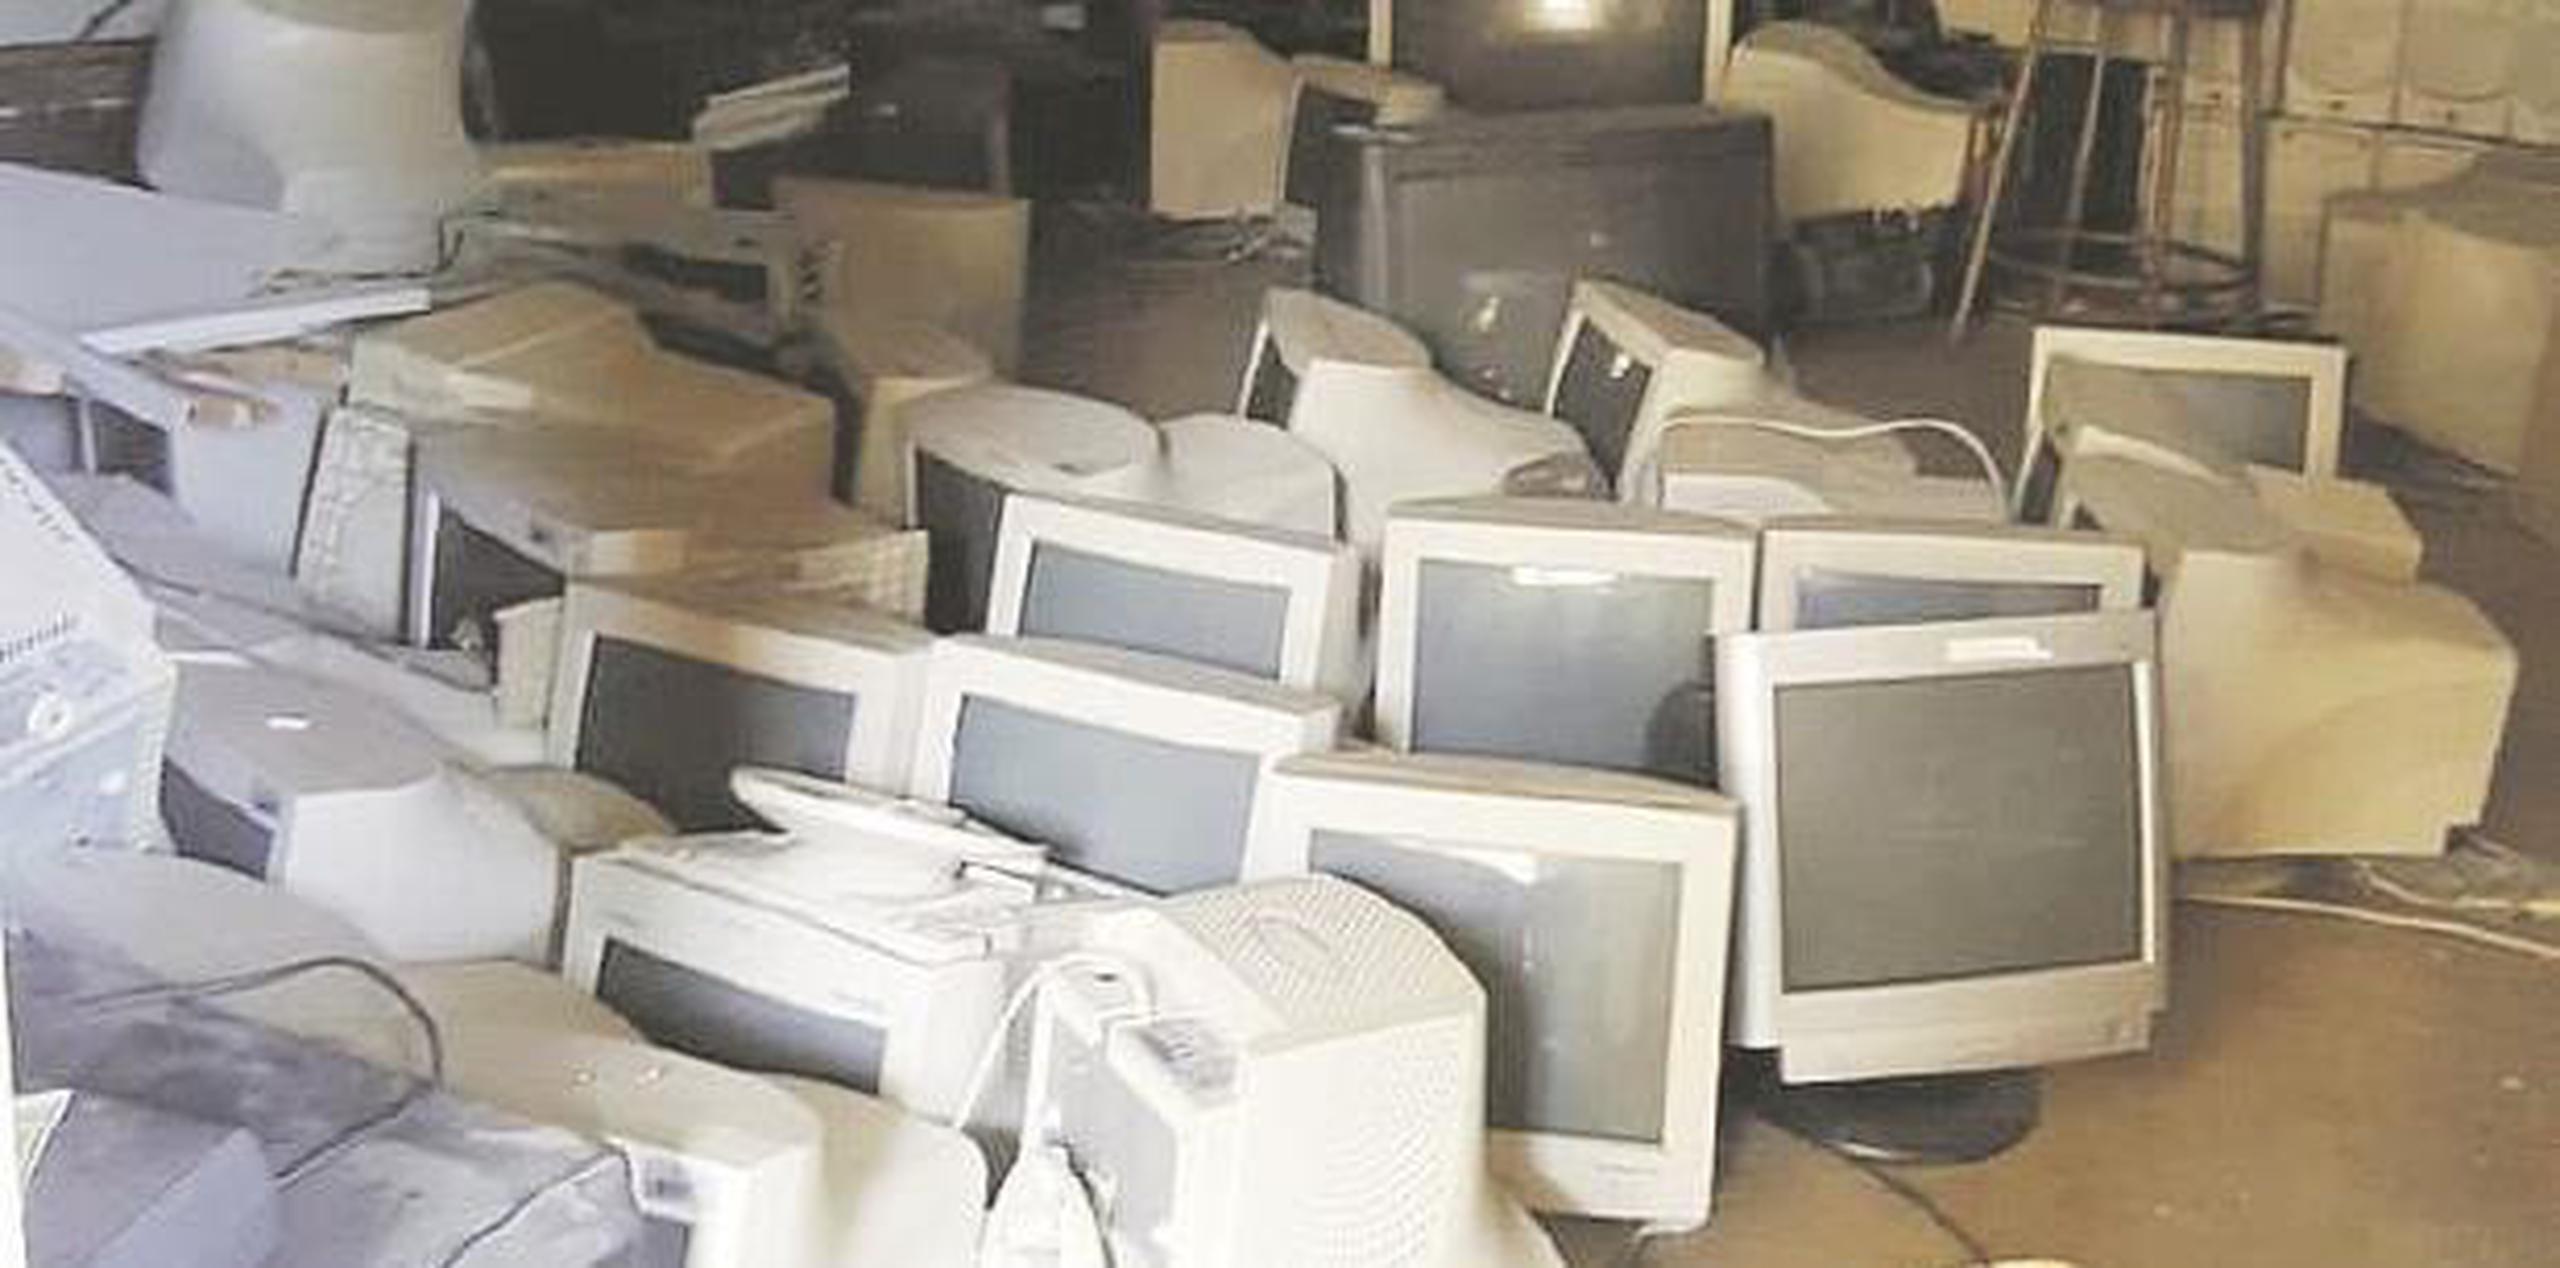 Entre los salones que todavía no están habilitados, el grupo de padres encontró uno lleno de computadoras que, al parecer, fueron decomisadas y permanecen en el suelo. (Suministrada)